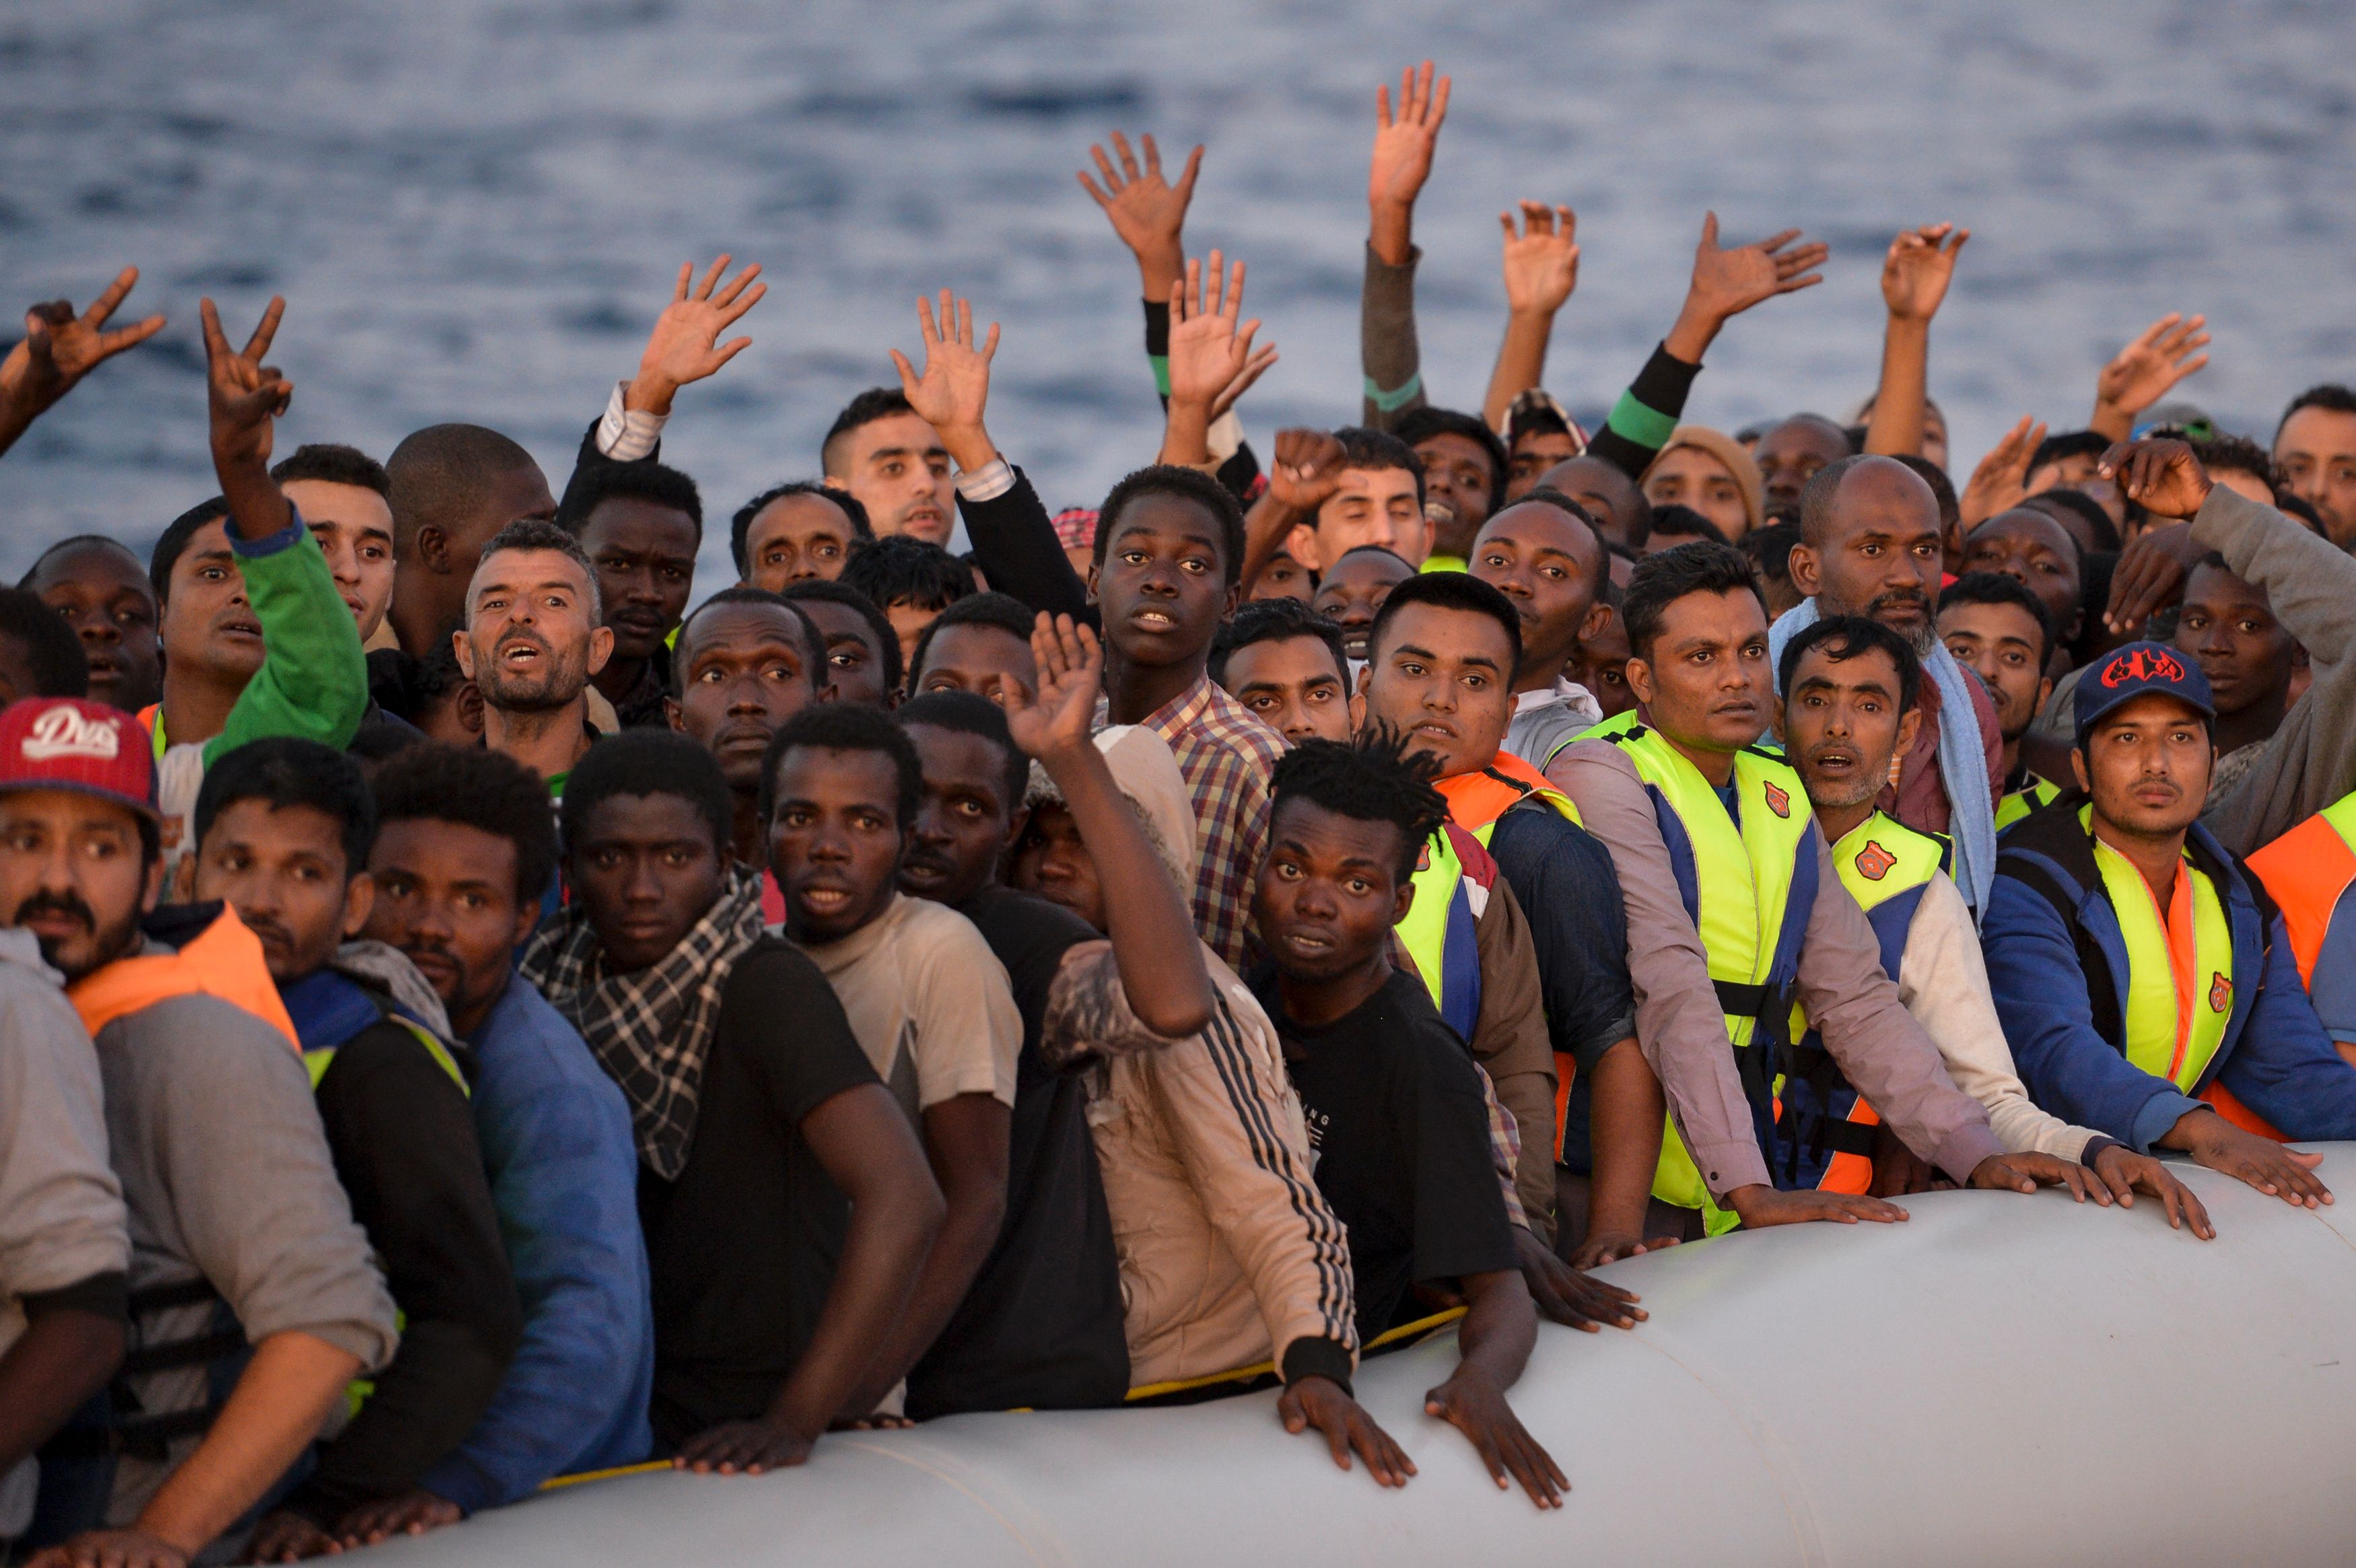 Gabriel gegen Asyllager in Nordafrika: Libyen „ein sehr unsicherer Platz“ für Flüchtlinge